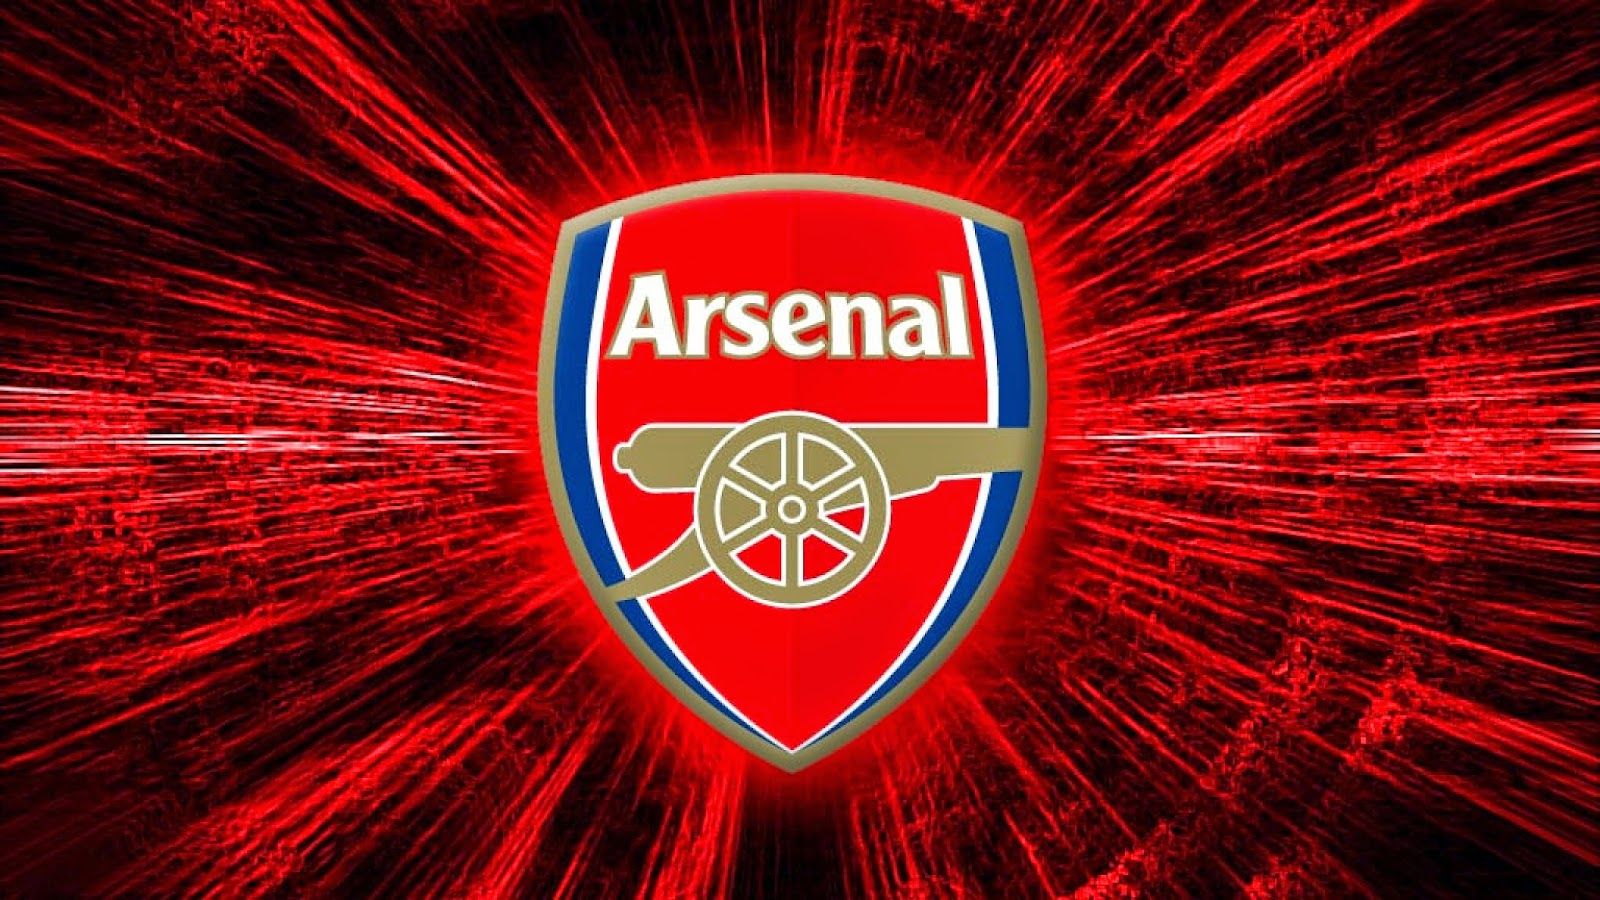 Arsenal s on